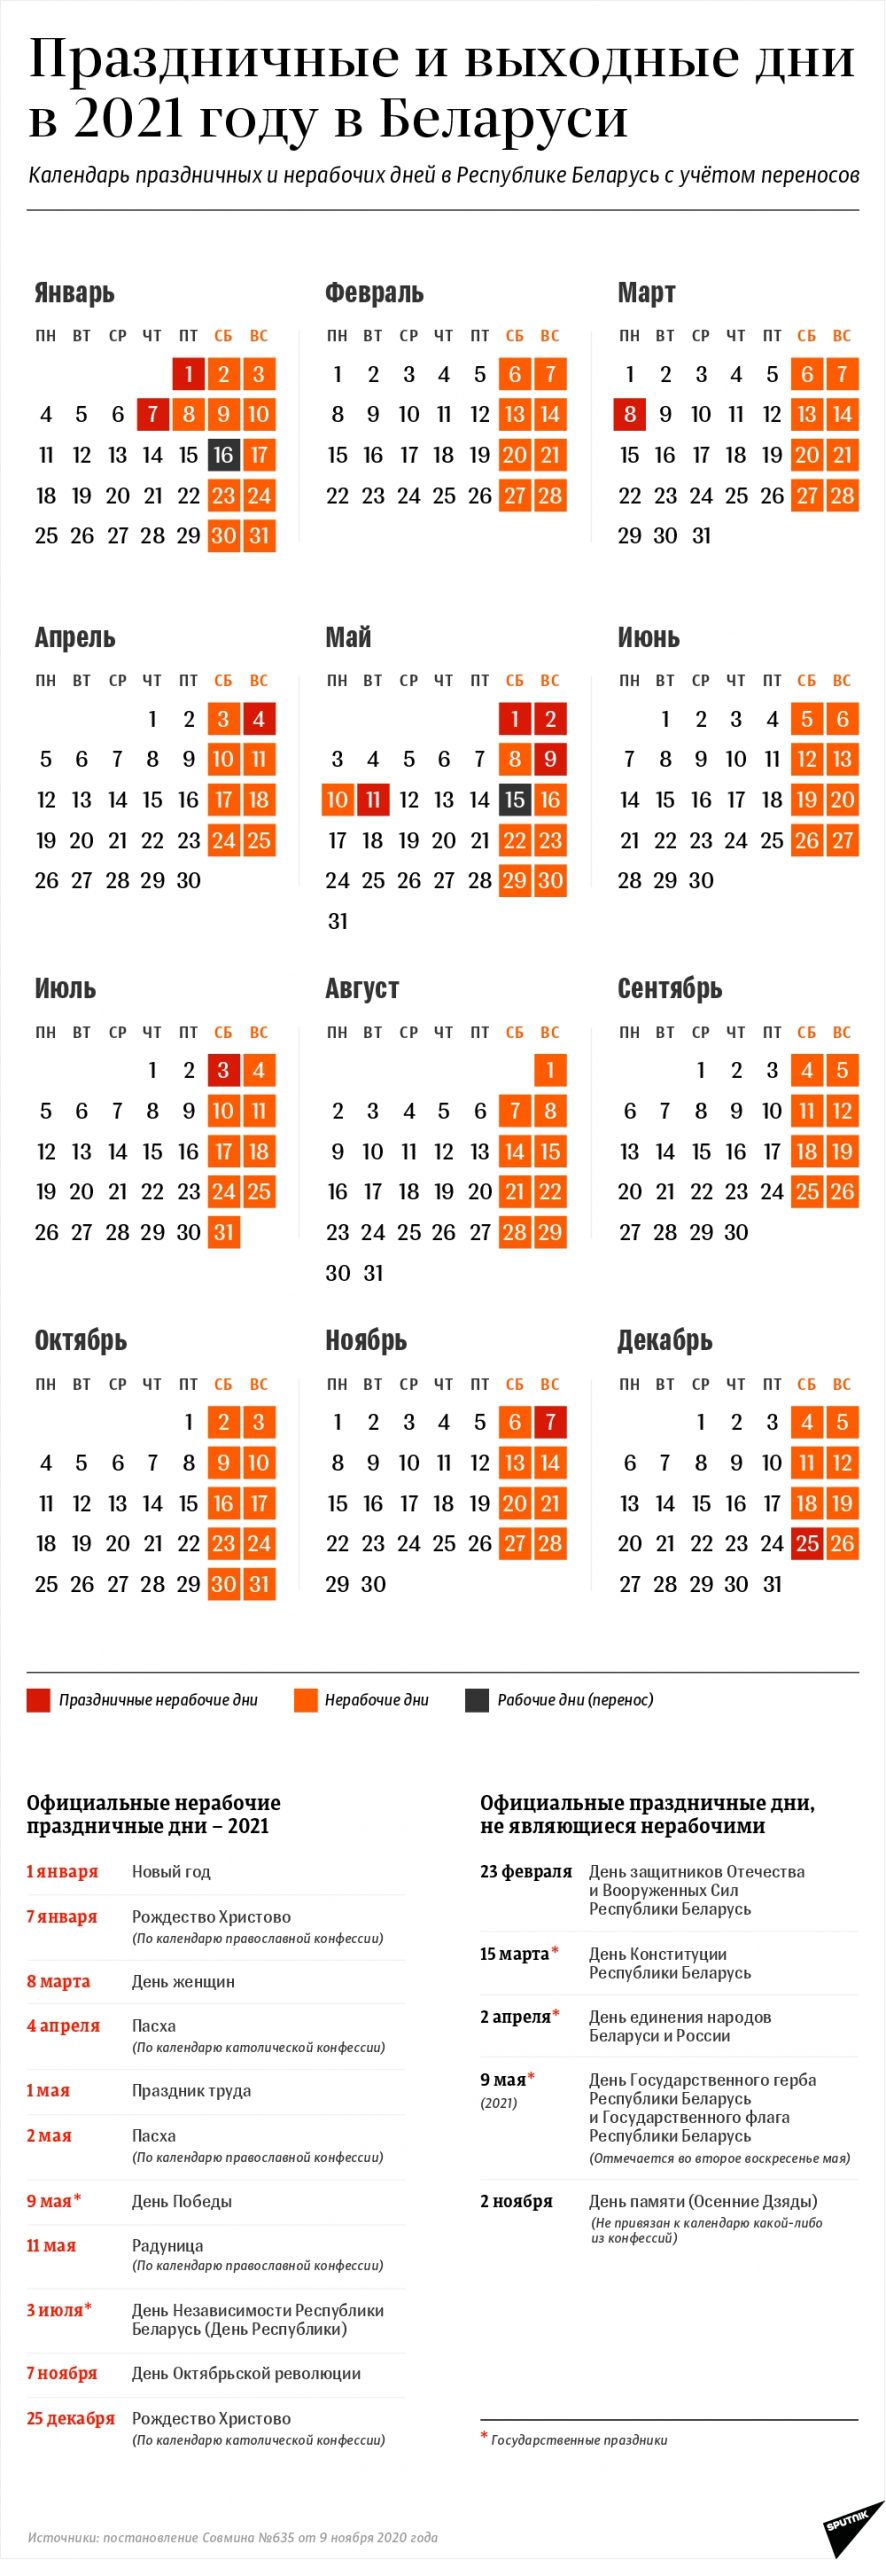 Календарь Выходных И Праздничных Дней В 2021 Году В Беларуси